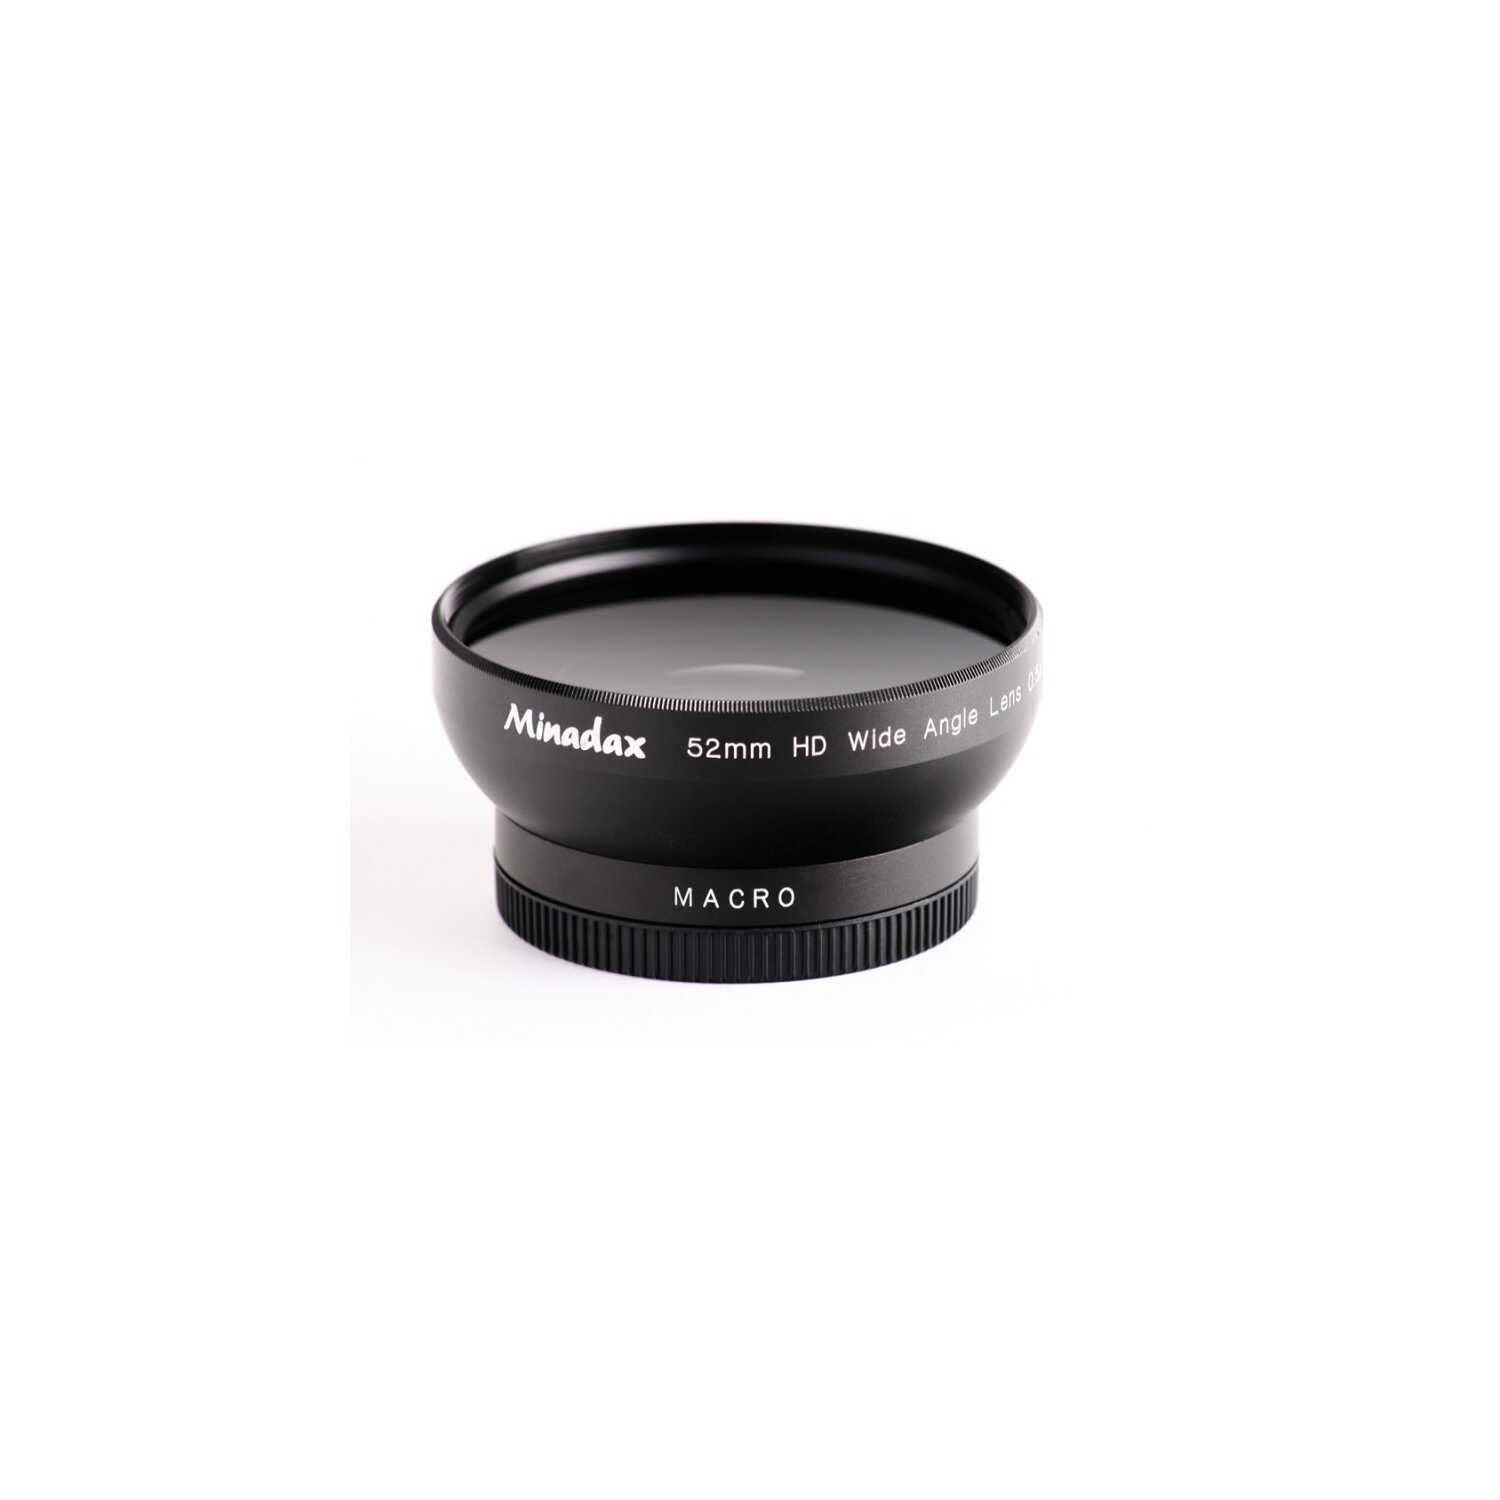 Minadax 0.5x Weitwinkel Vorsatz mit Makrolinse kompatibel mit Nikon CoolPix 885 und 4300 - in schwarz